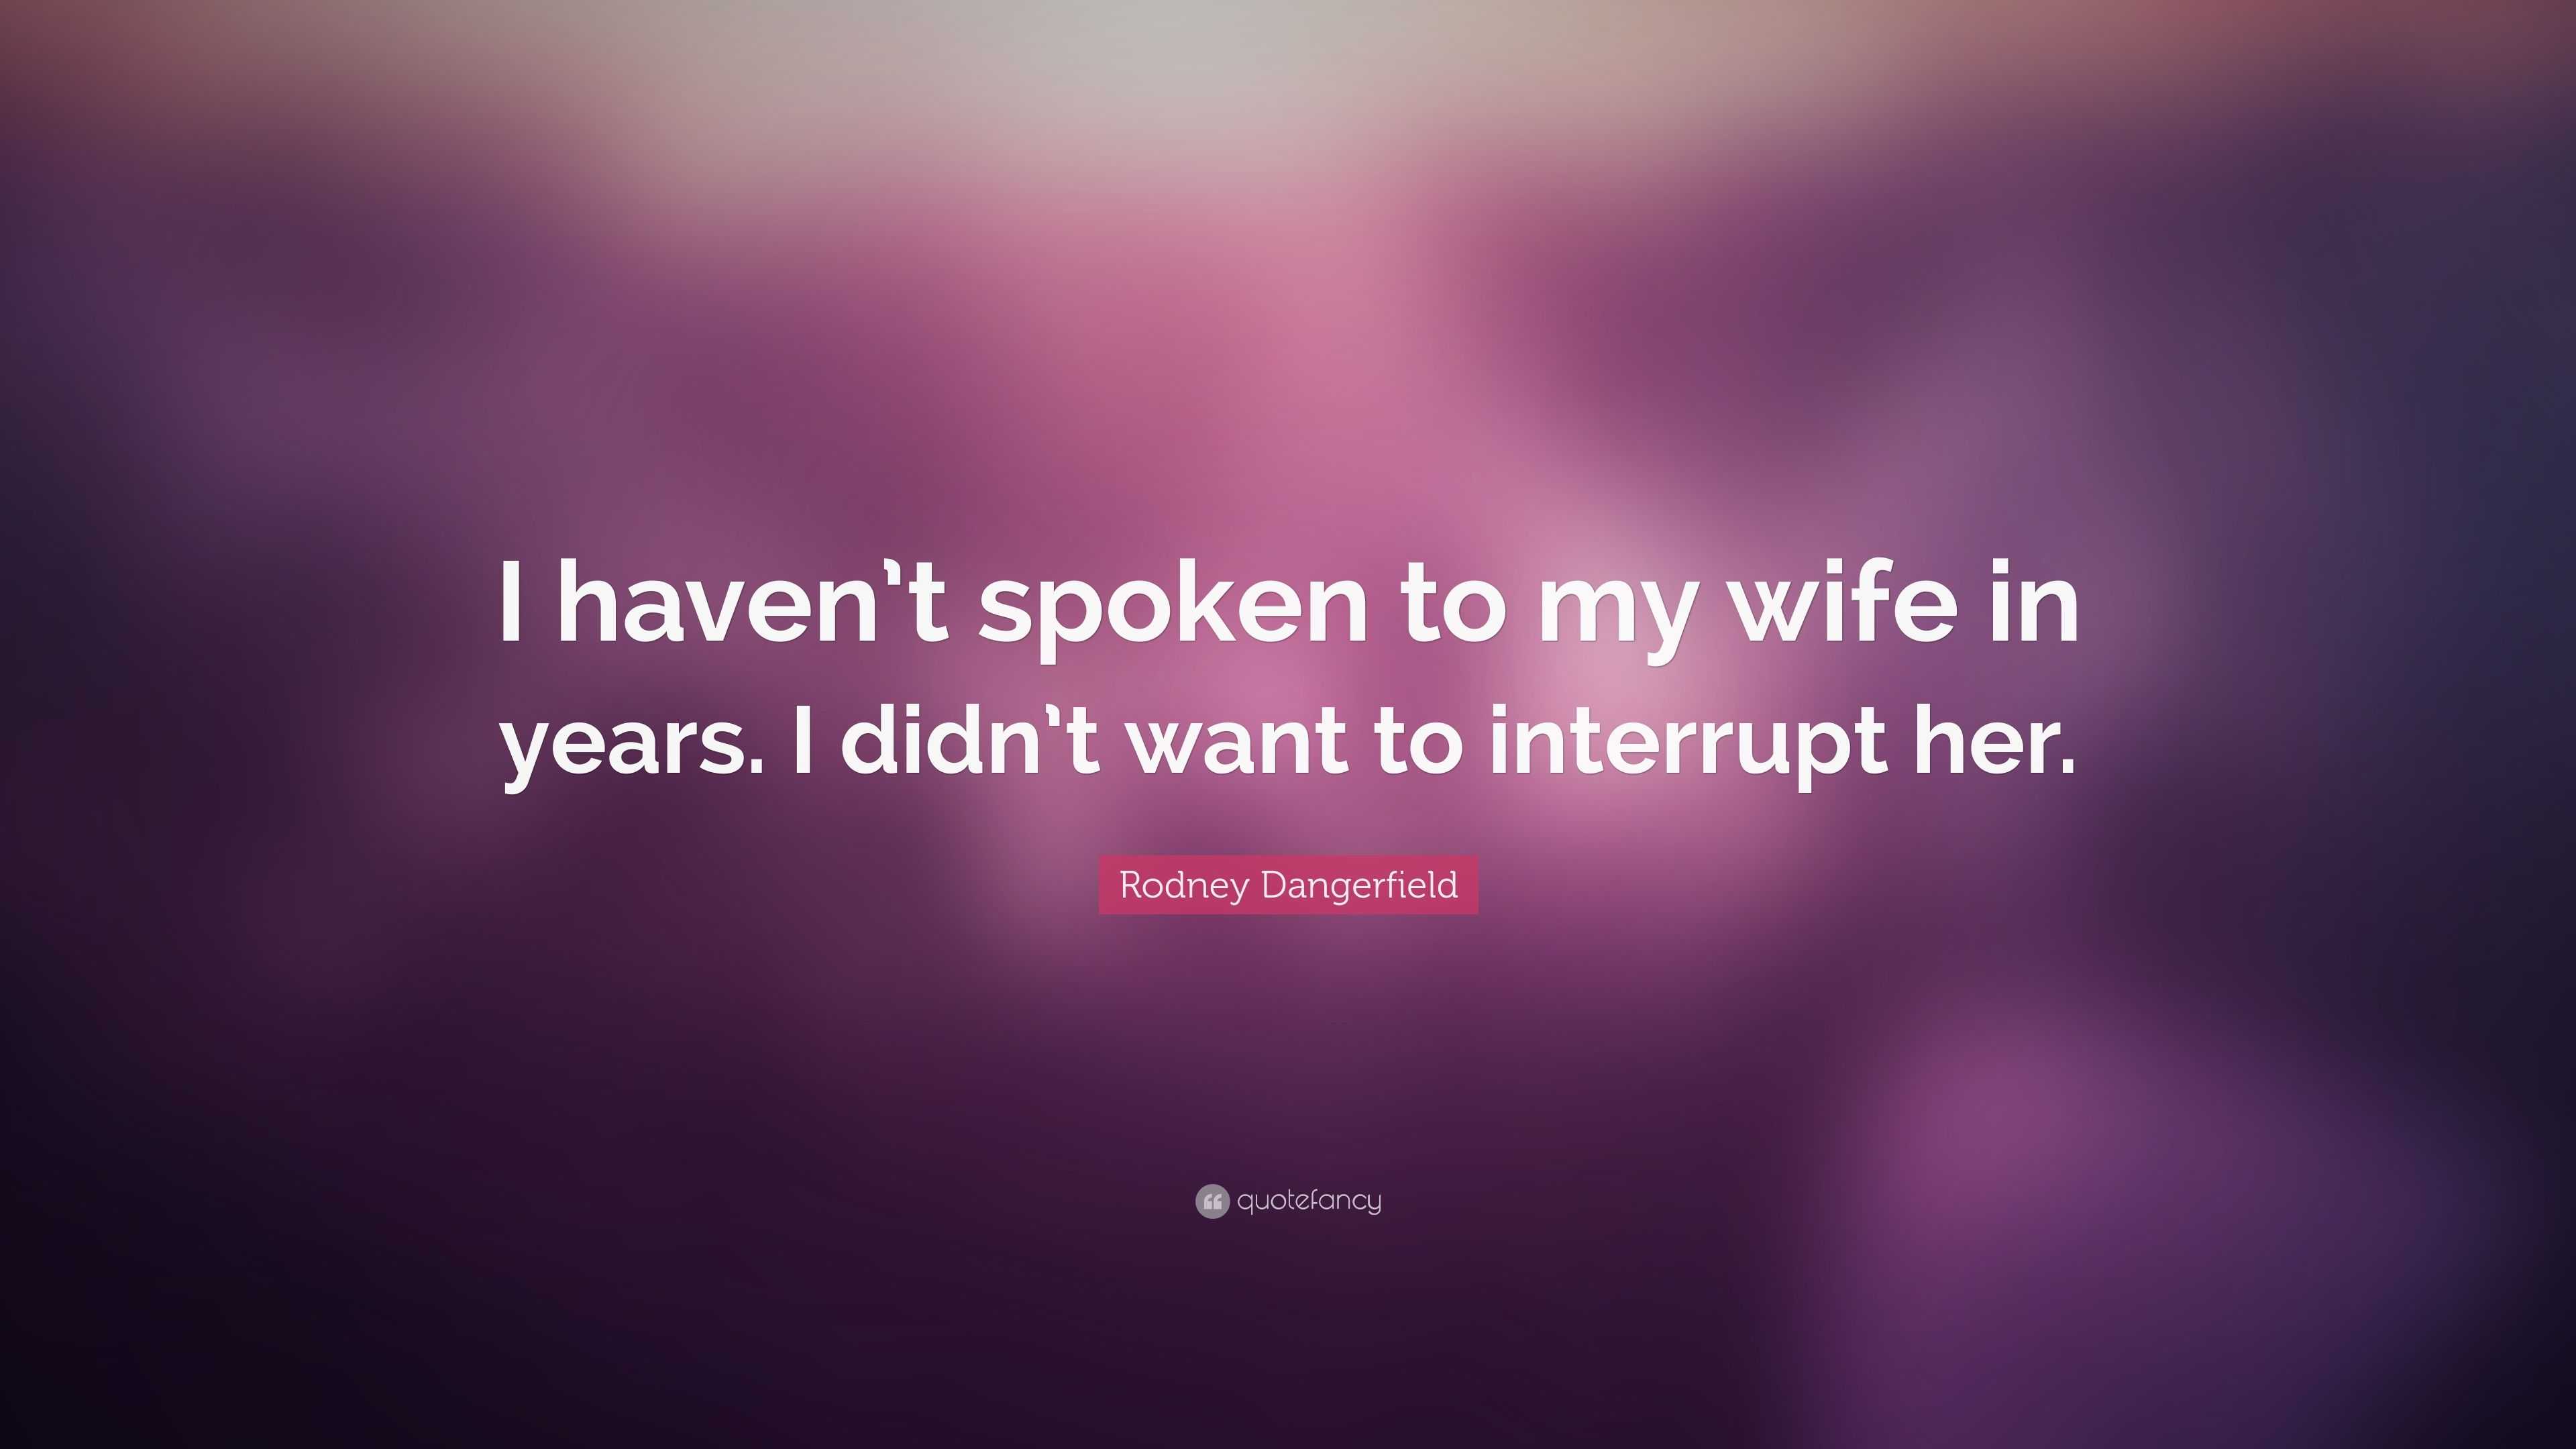 Rodney Dangerfield - I haven't spoken to my wife in years.